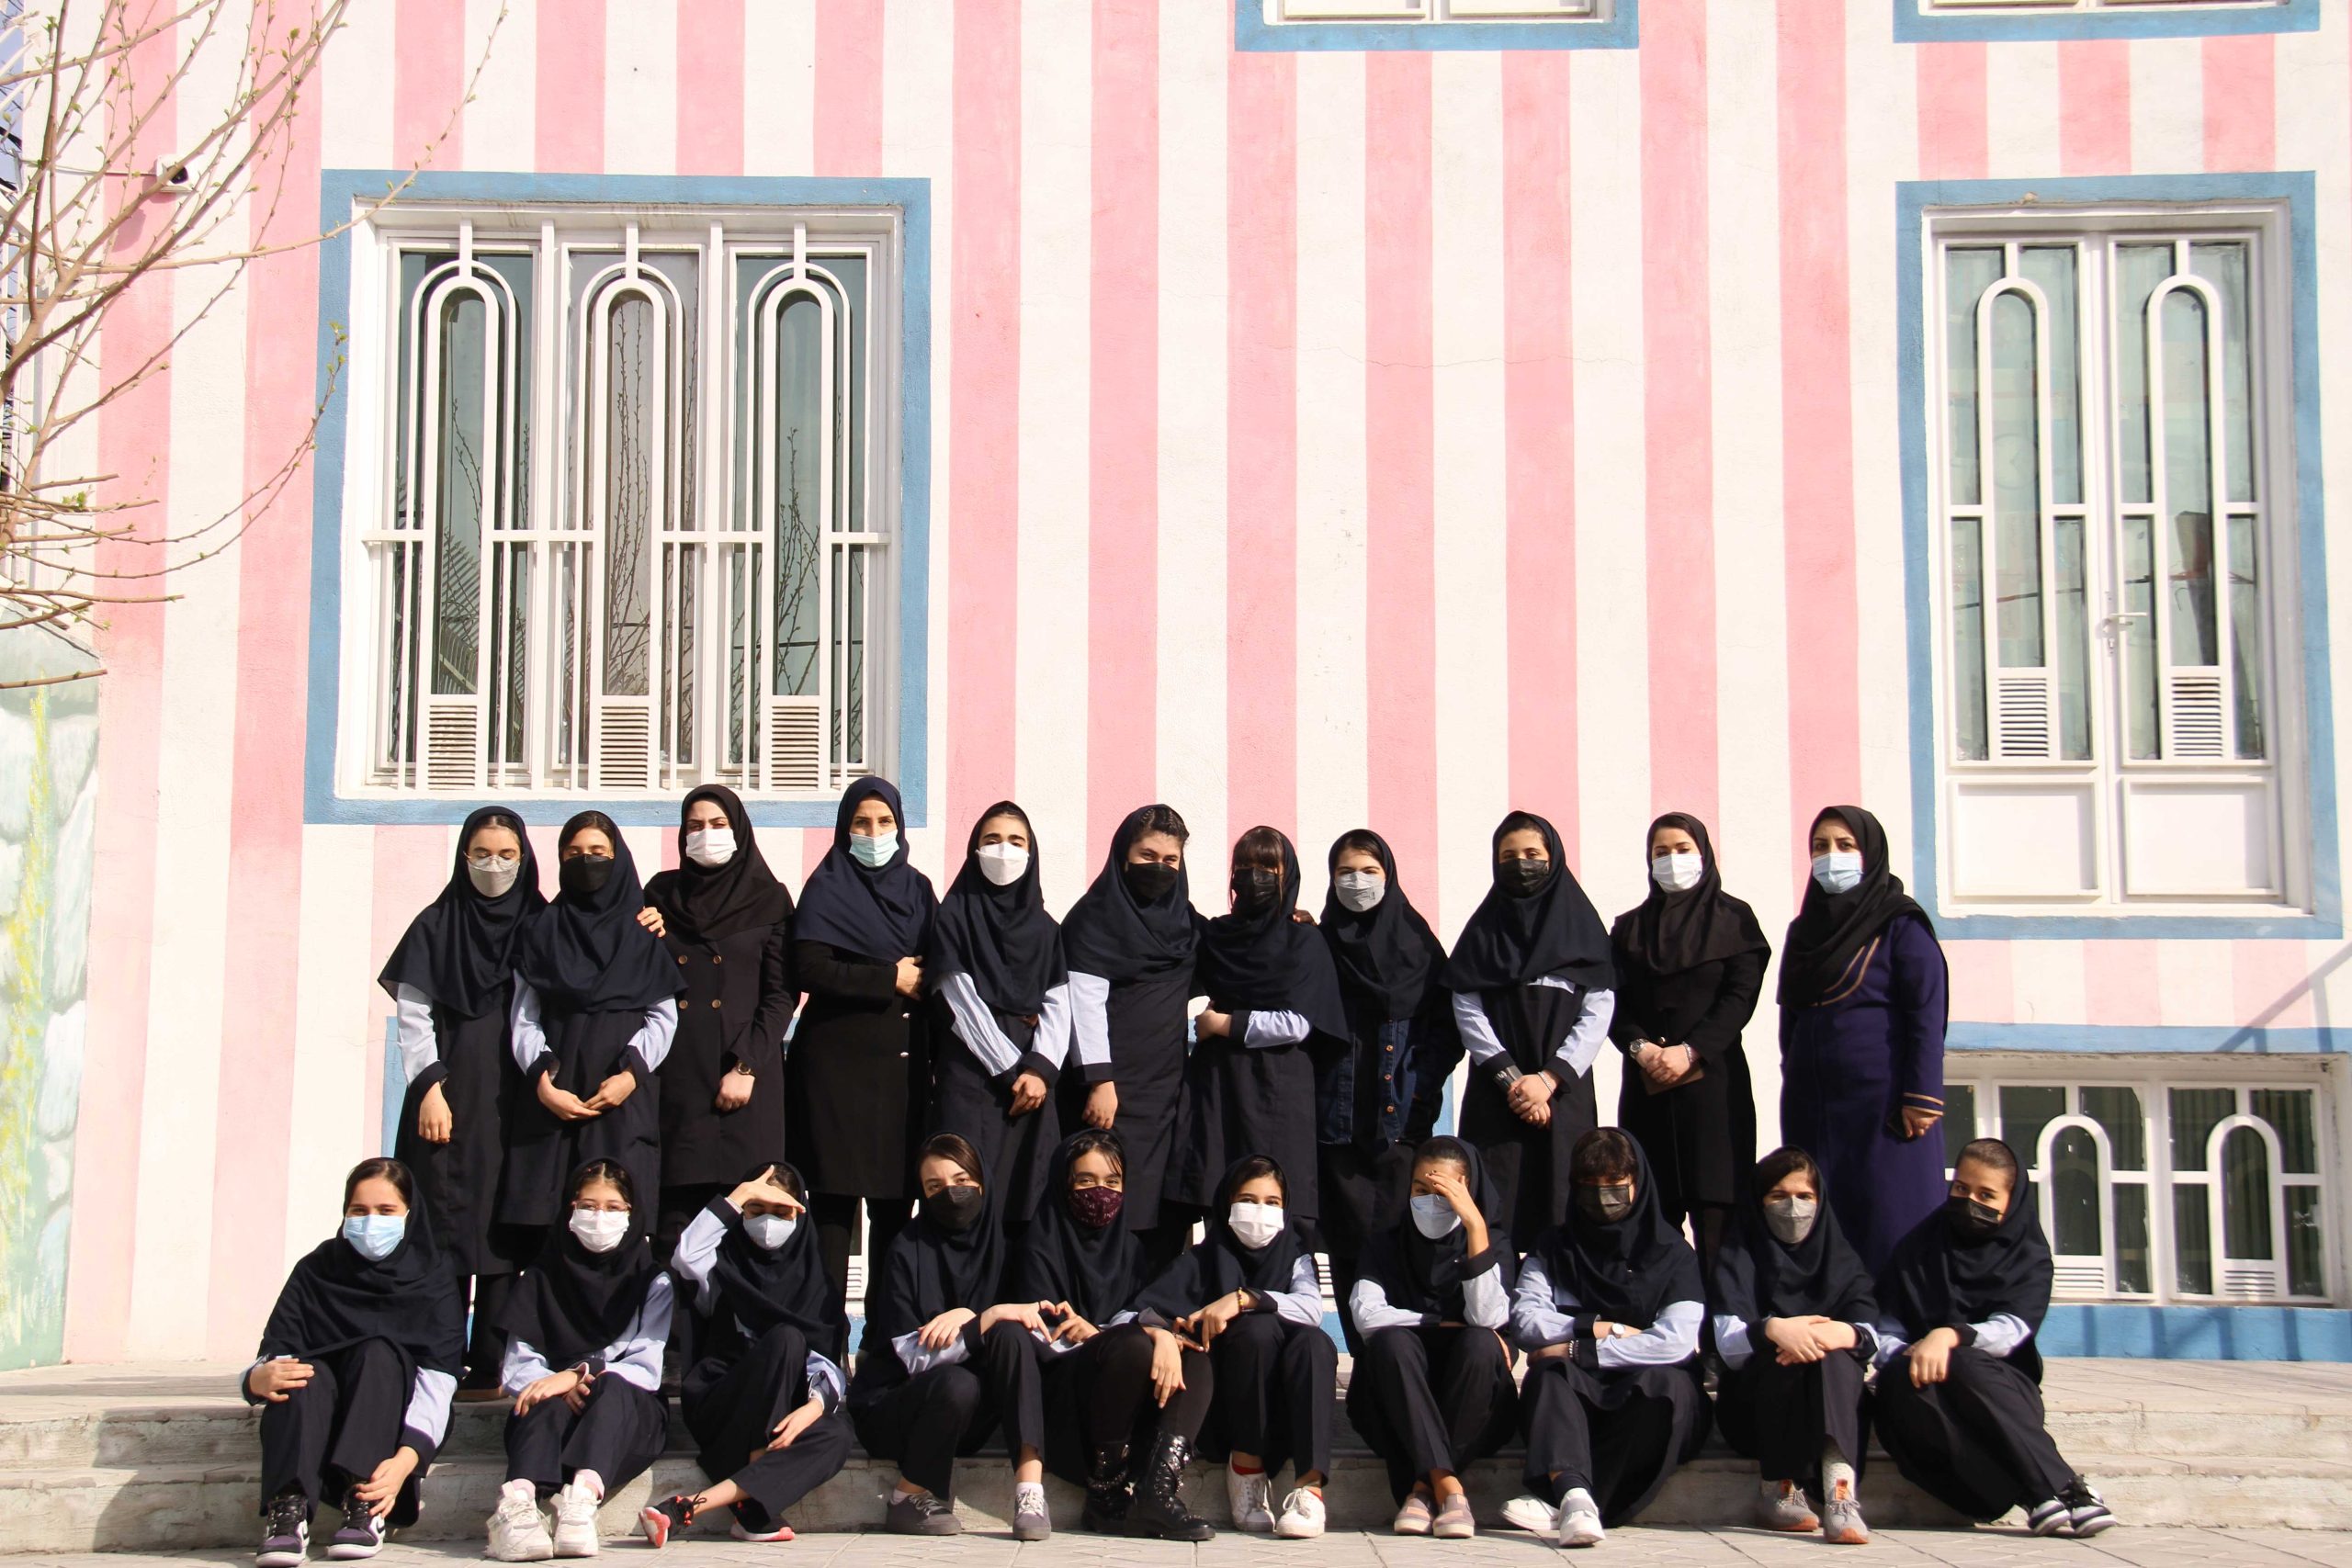 دبیرستان دخترانه غیر انتفاعی اندیشه پارسیان - بهترین دبیرستان دخترانه تهران